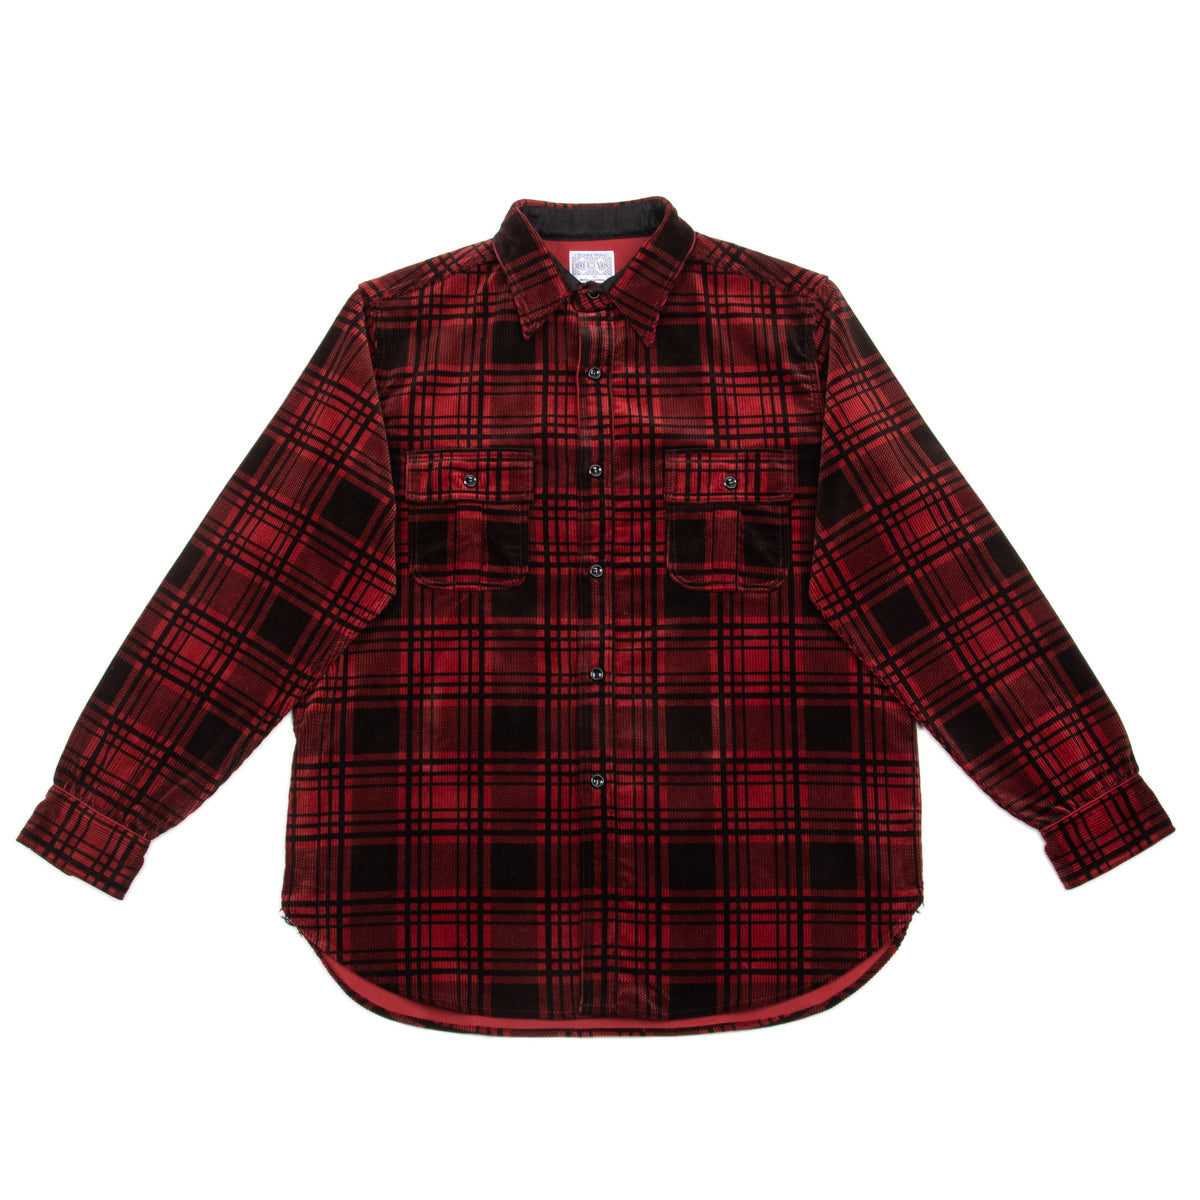 8HU Print Corduroy Shirt - Brick Red